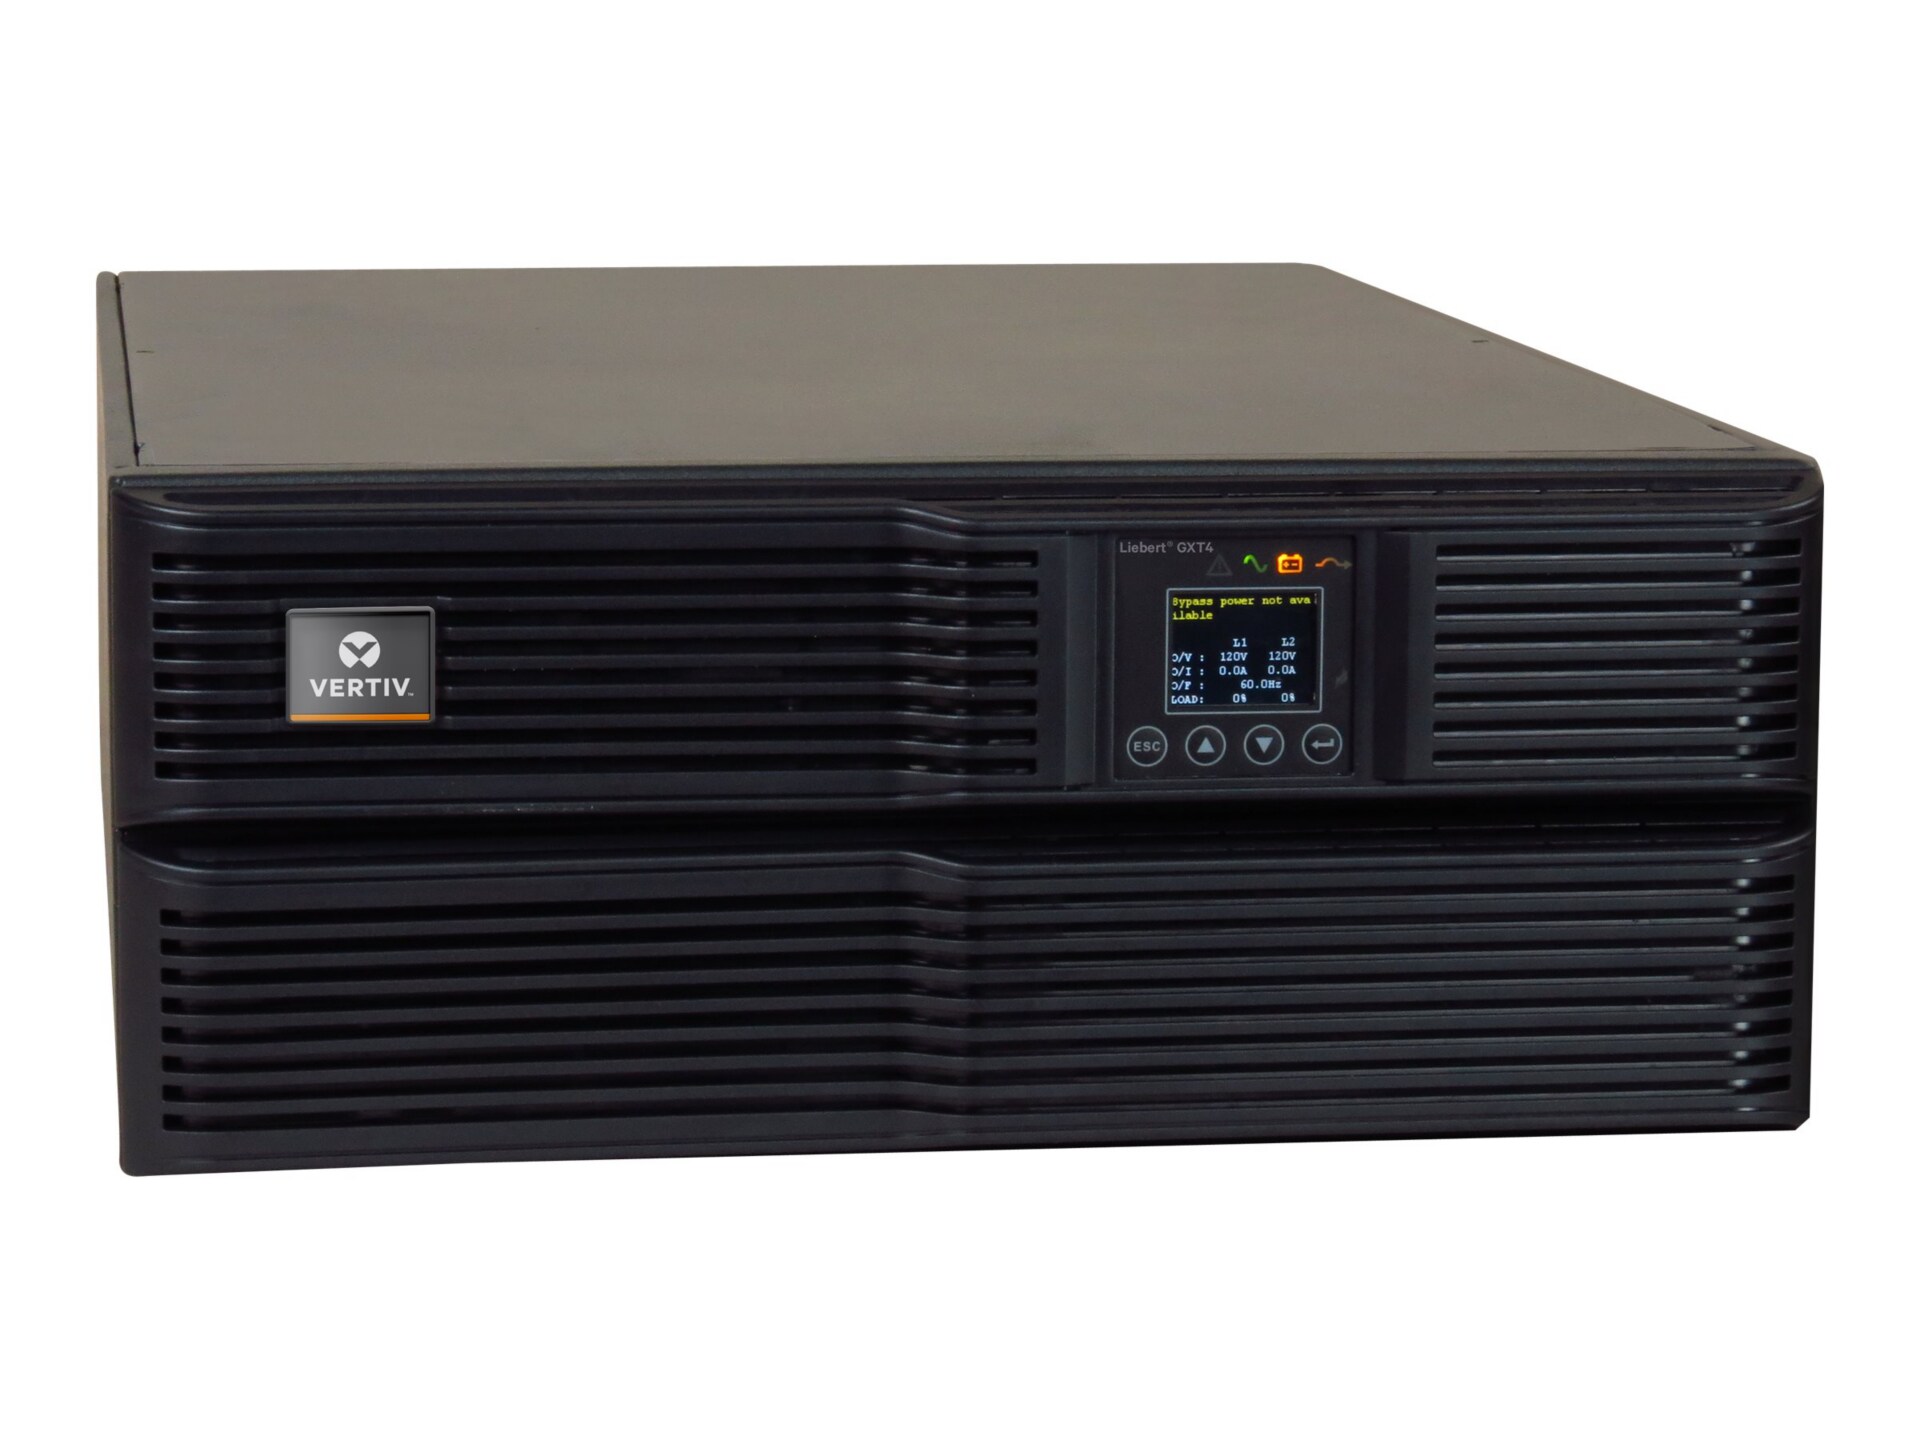 Vertiv Liebert GXT4 6000VA/4800W, 230V Double Conversion Rack/Tower UPS